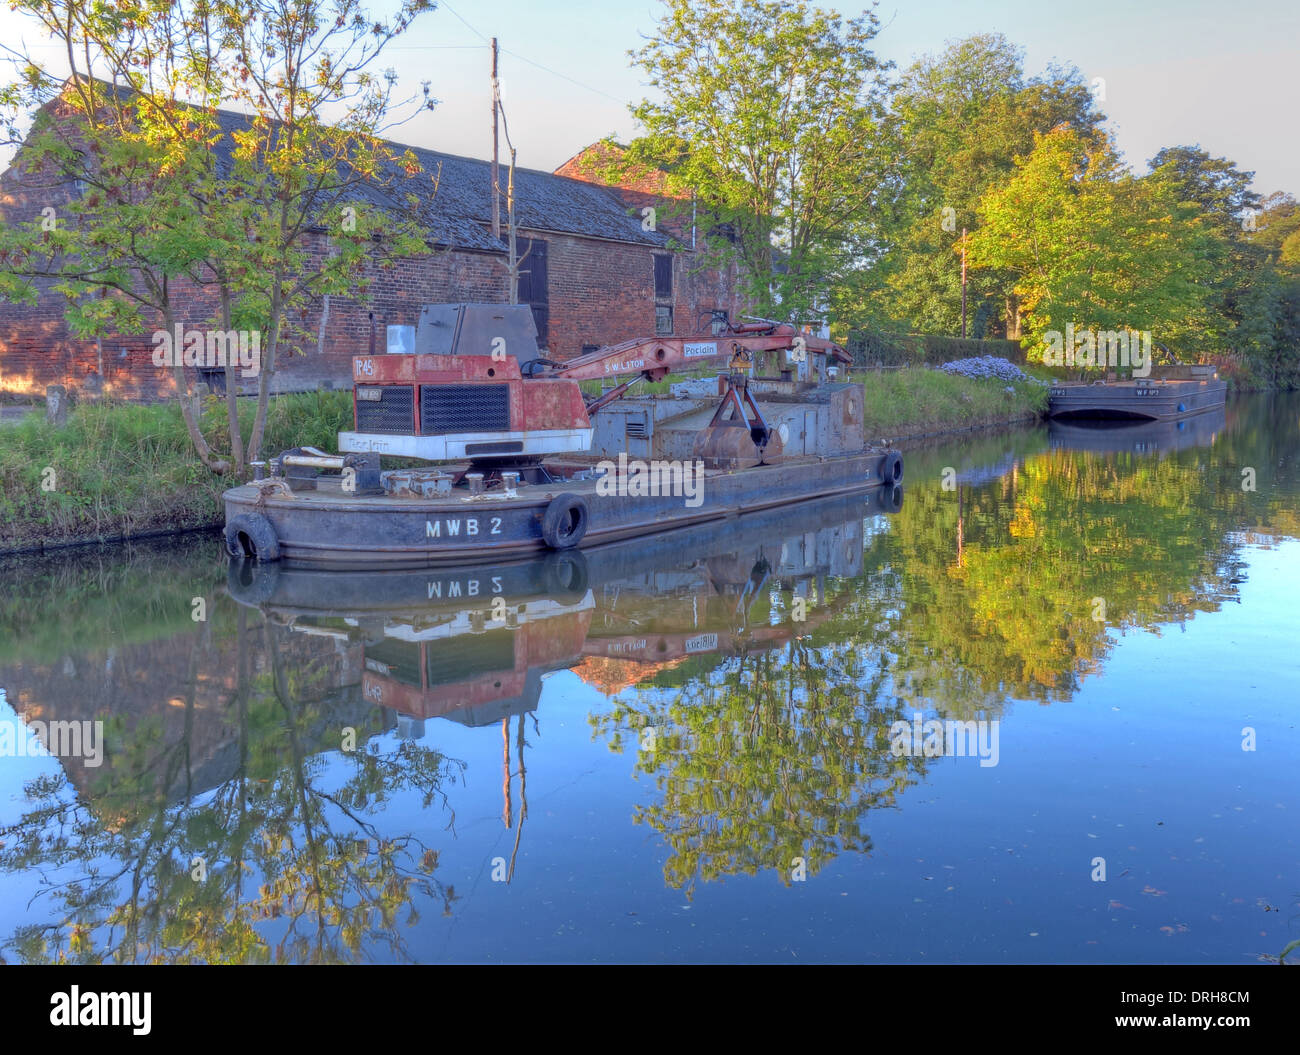 MWB2 barge de grue en acier rivetée sur le canal de Bridgewater, près de Grappenhall, Cheshire, Royaume-Uni, WA4 Banque D'Images